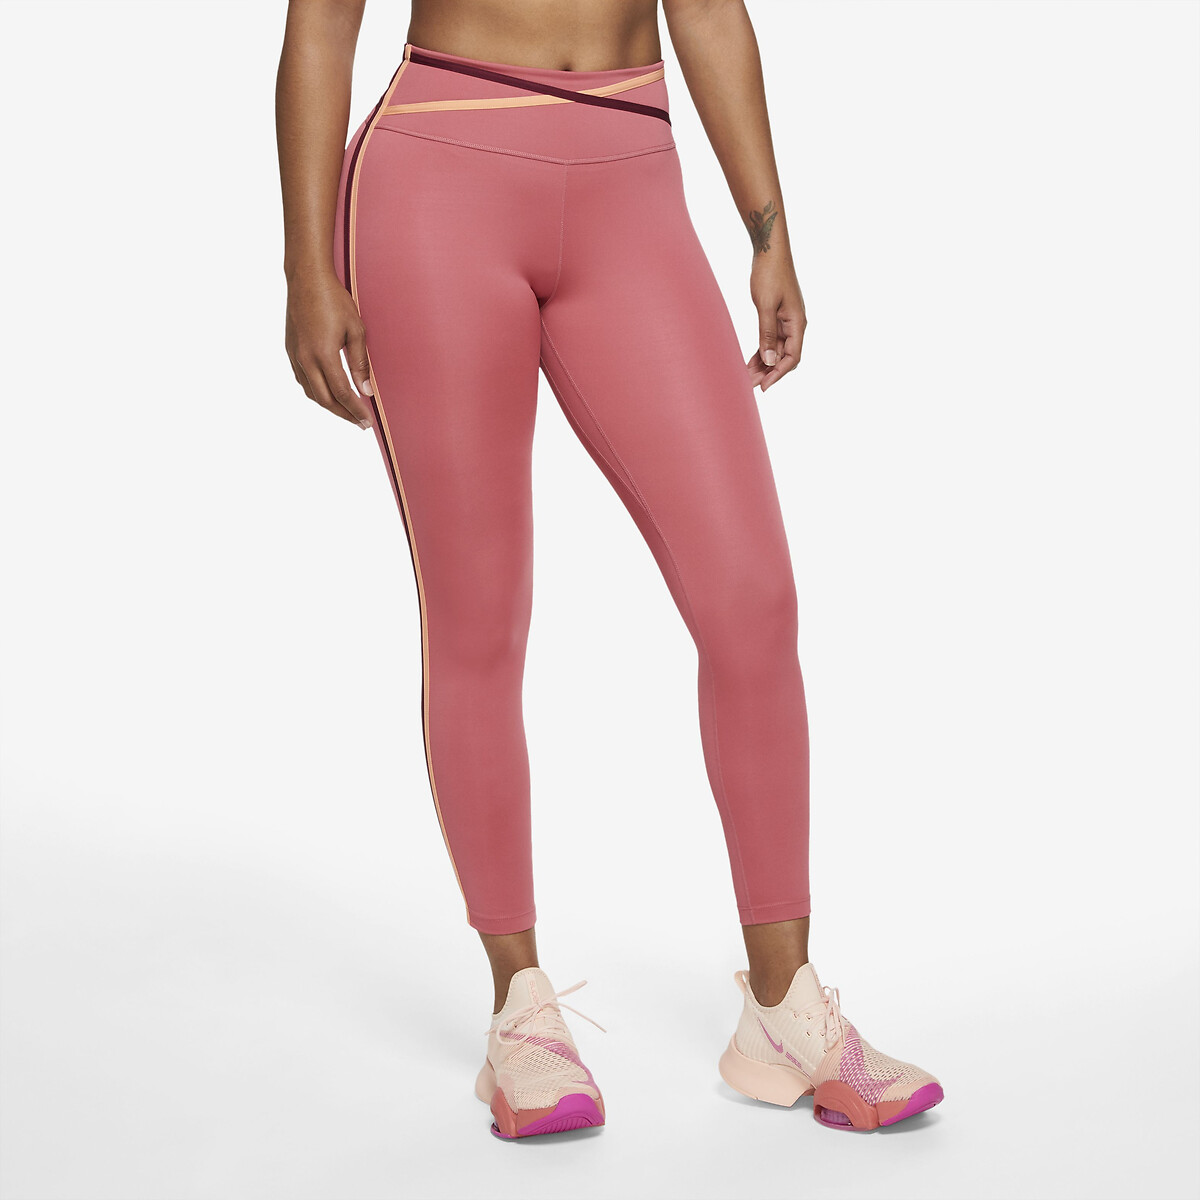 Besmettelijk Boomgaard perzik 7/8 legging voor training of yoga roze Nike | La Redoute